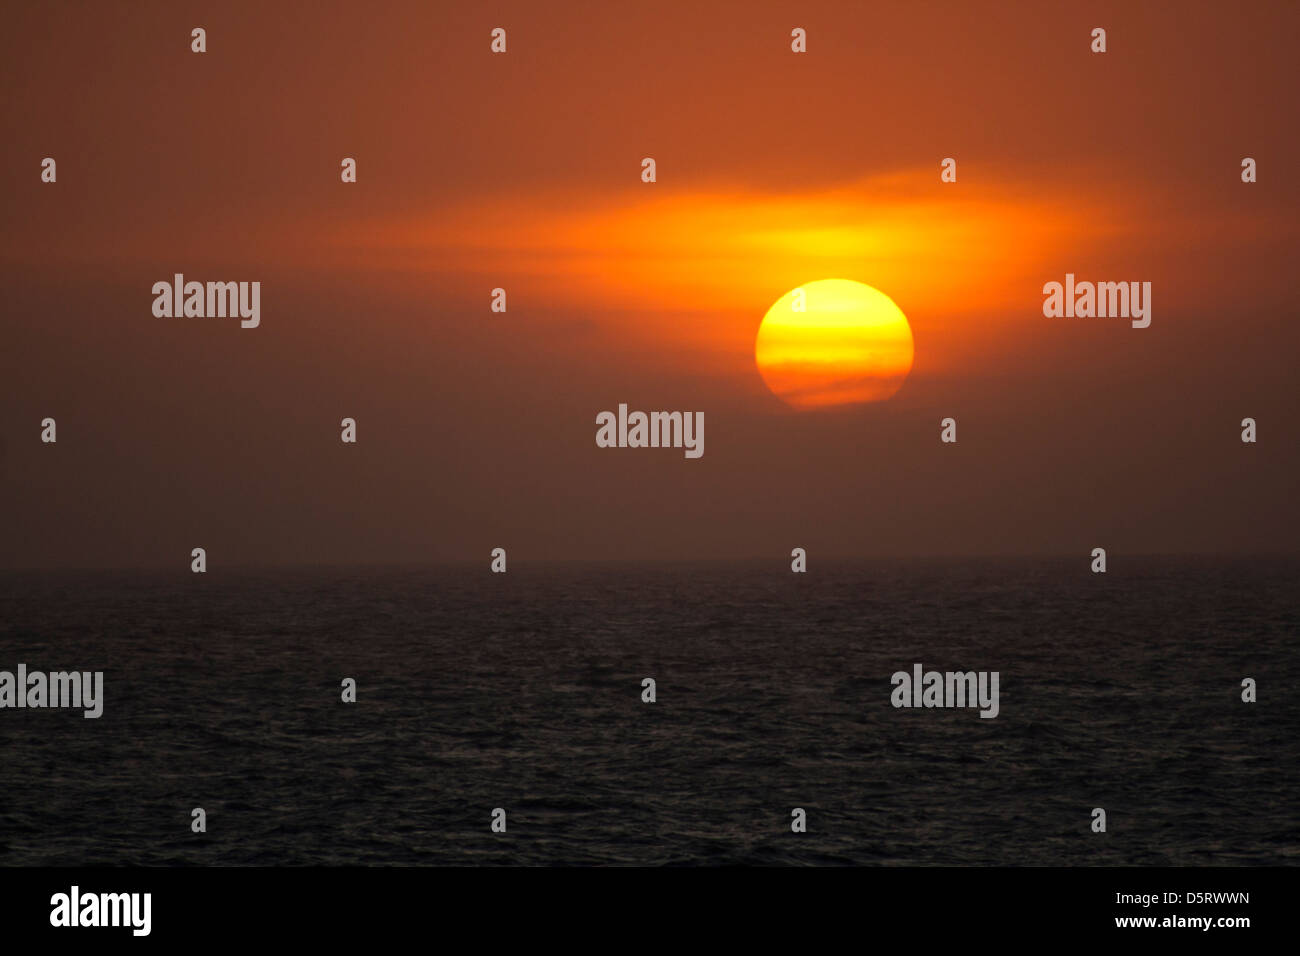 sunset sunrise at offshore ocean. Stock Photo